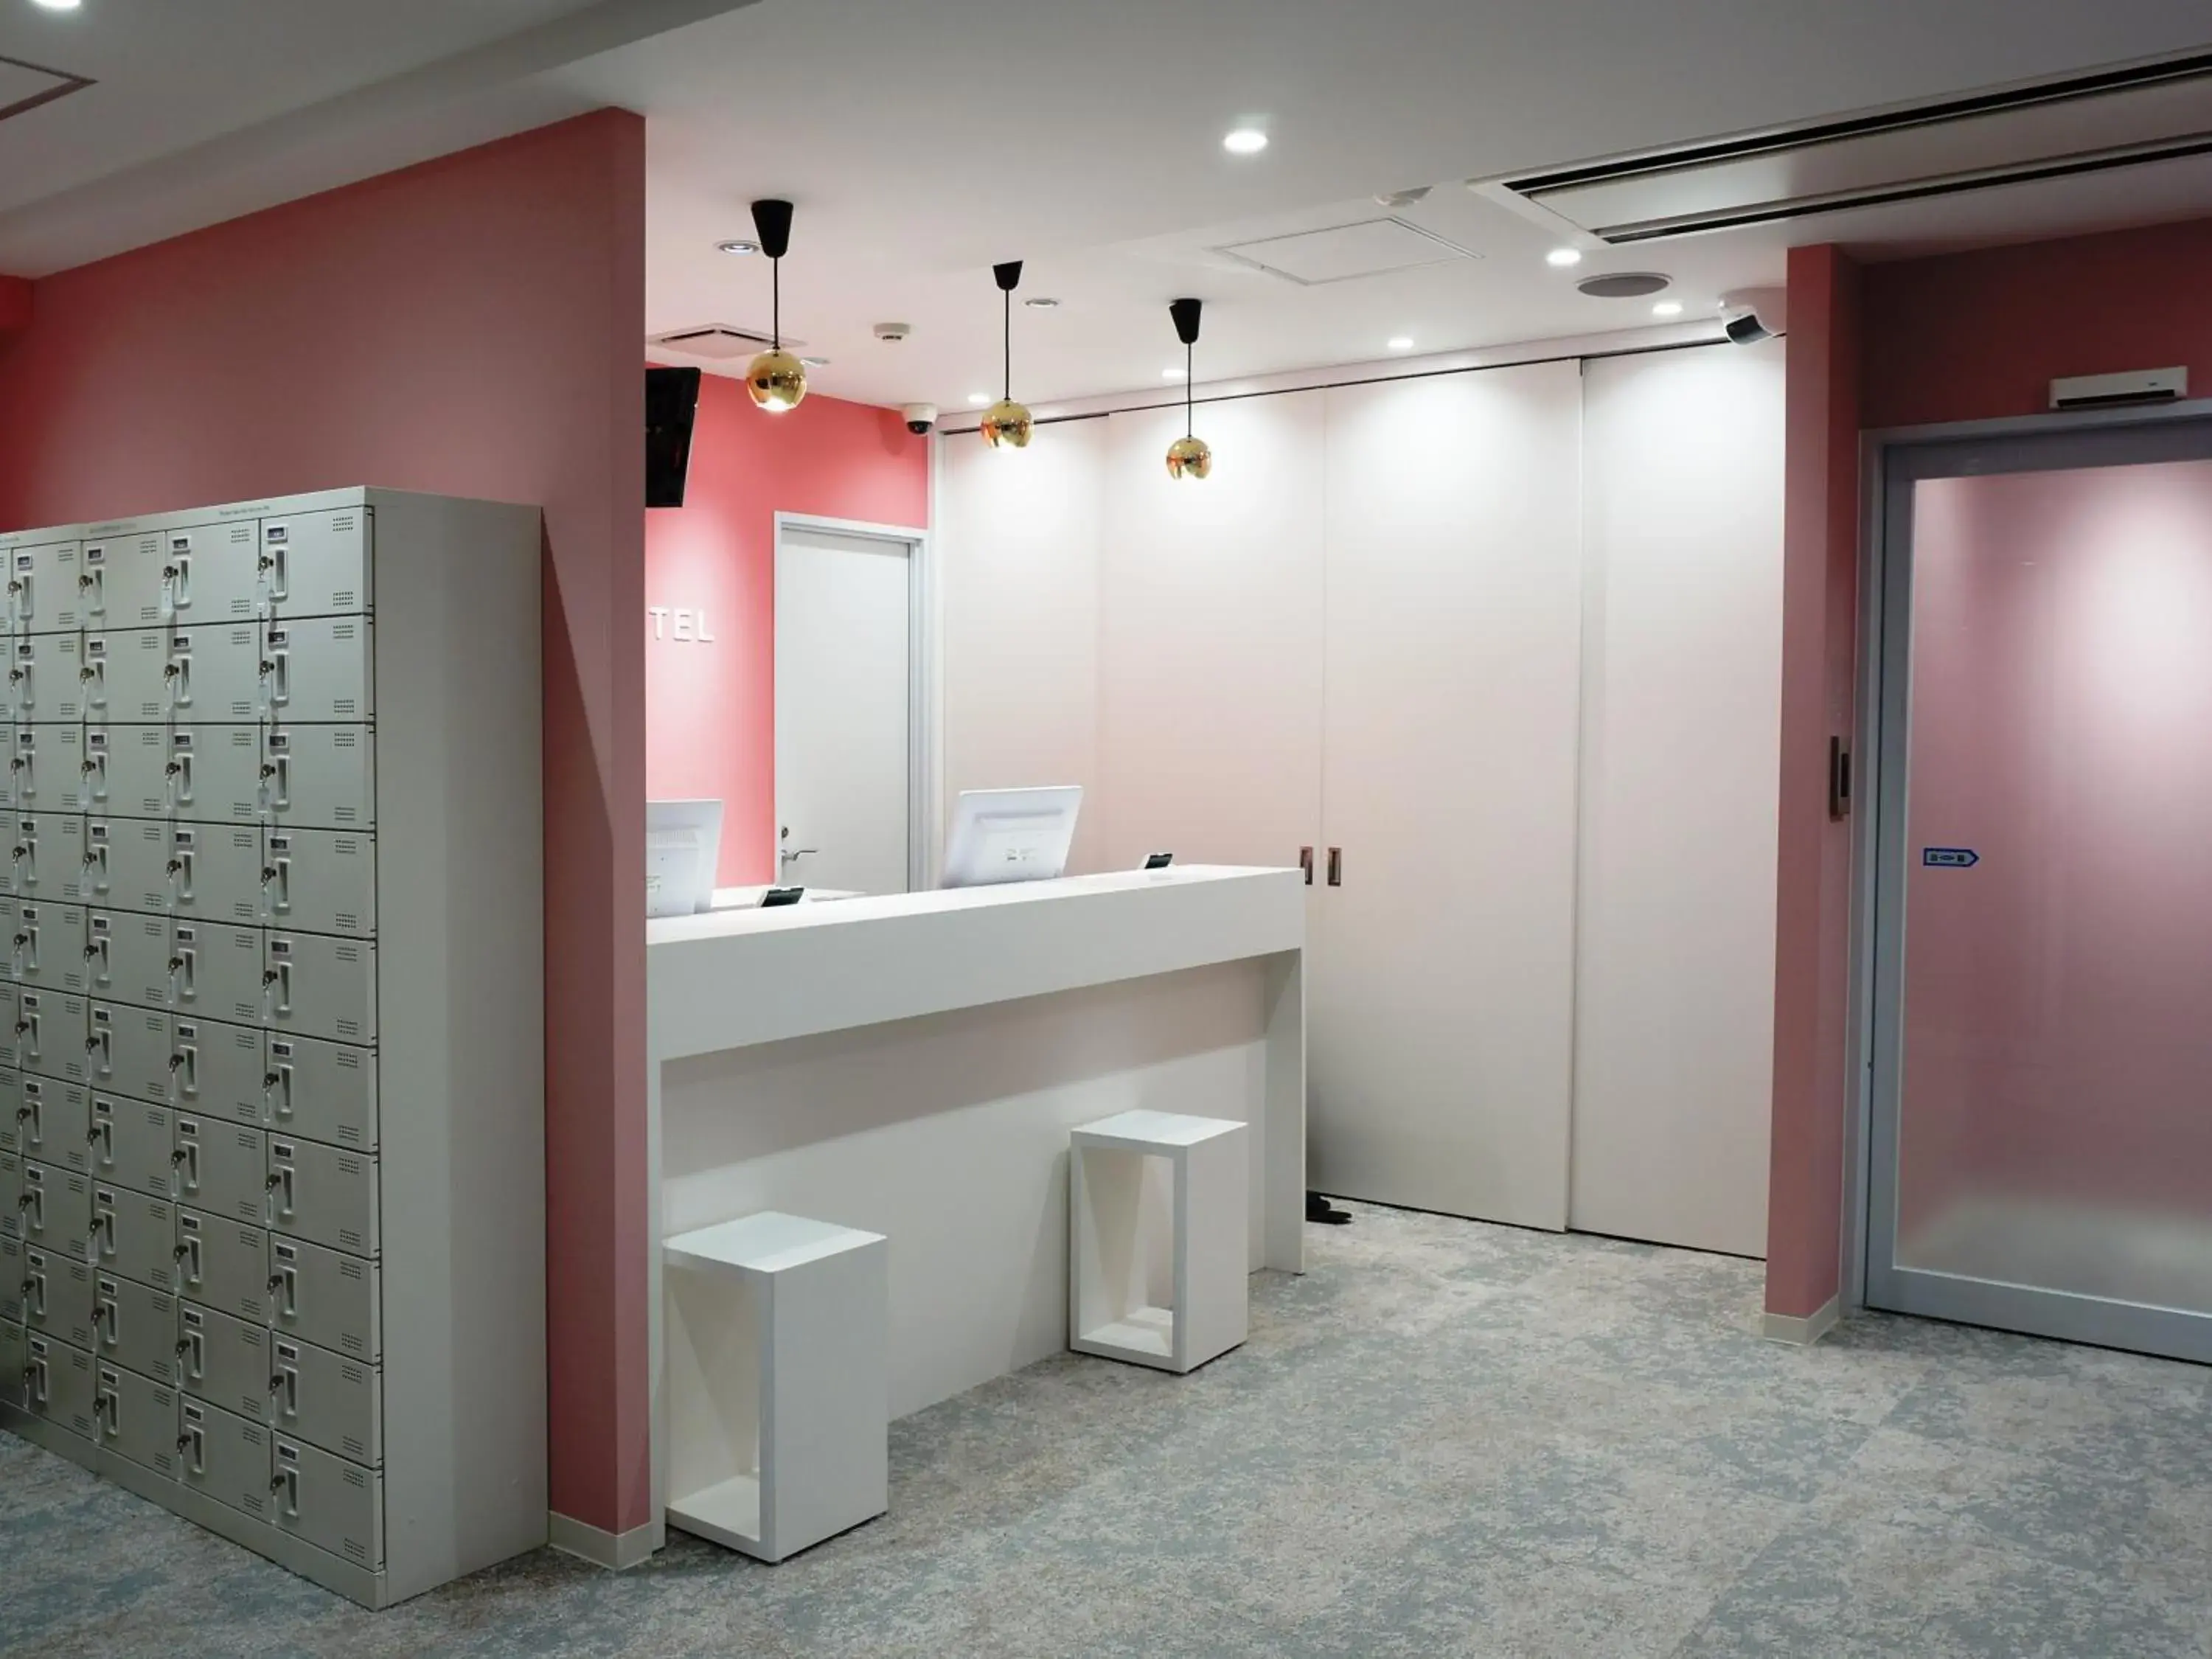 Lobby or reception, Bathroom in Akihabara Bay Hotel (Female Only)